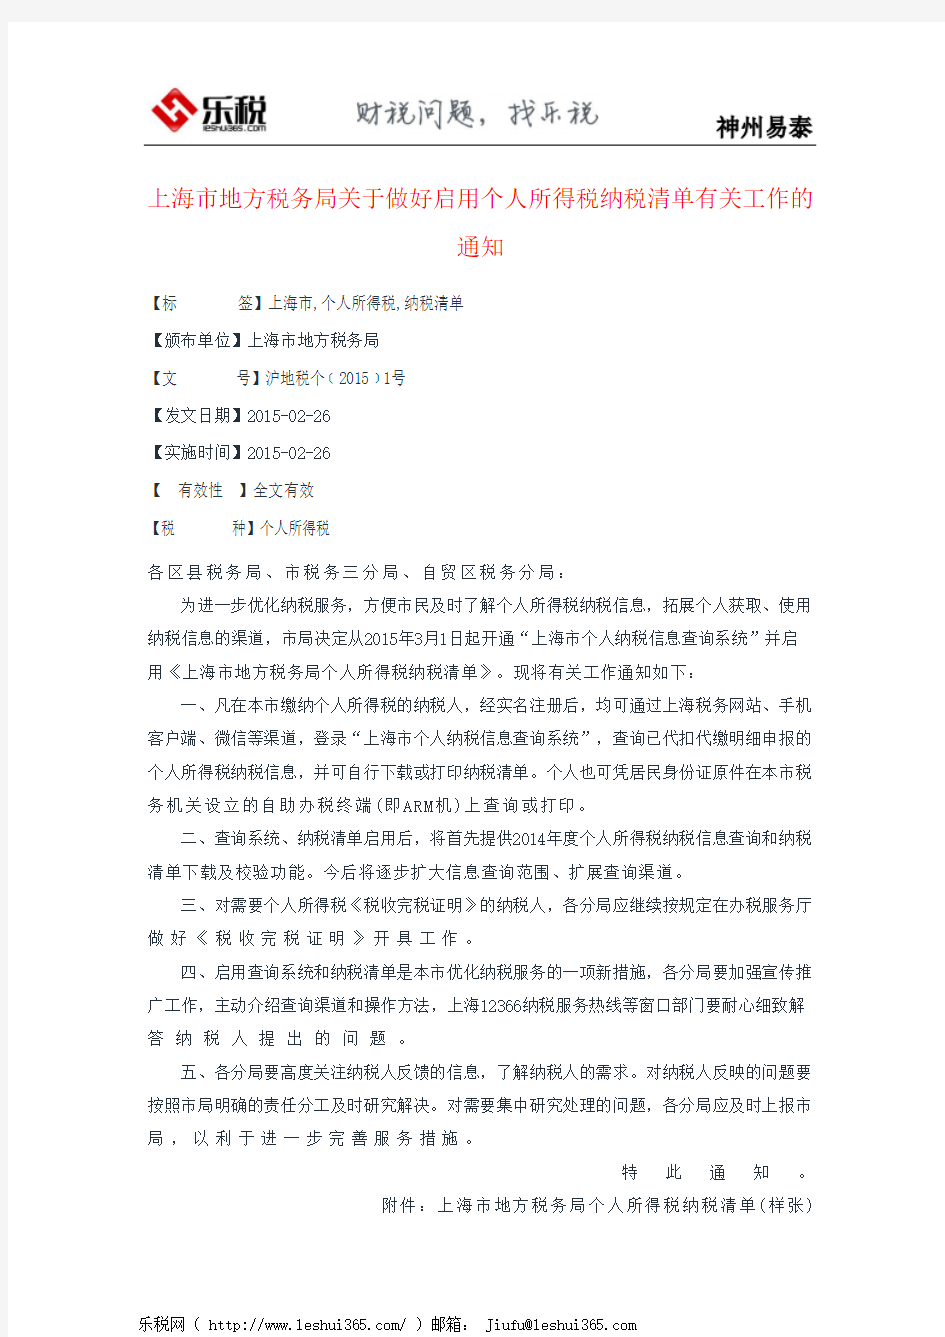 上海市地方税务局关于做好启用个人所得税纳税清单有关工作的通知